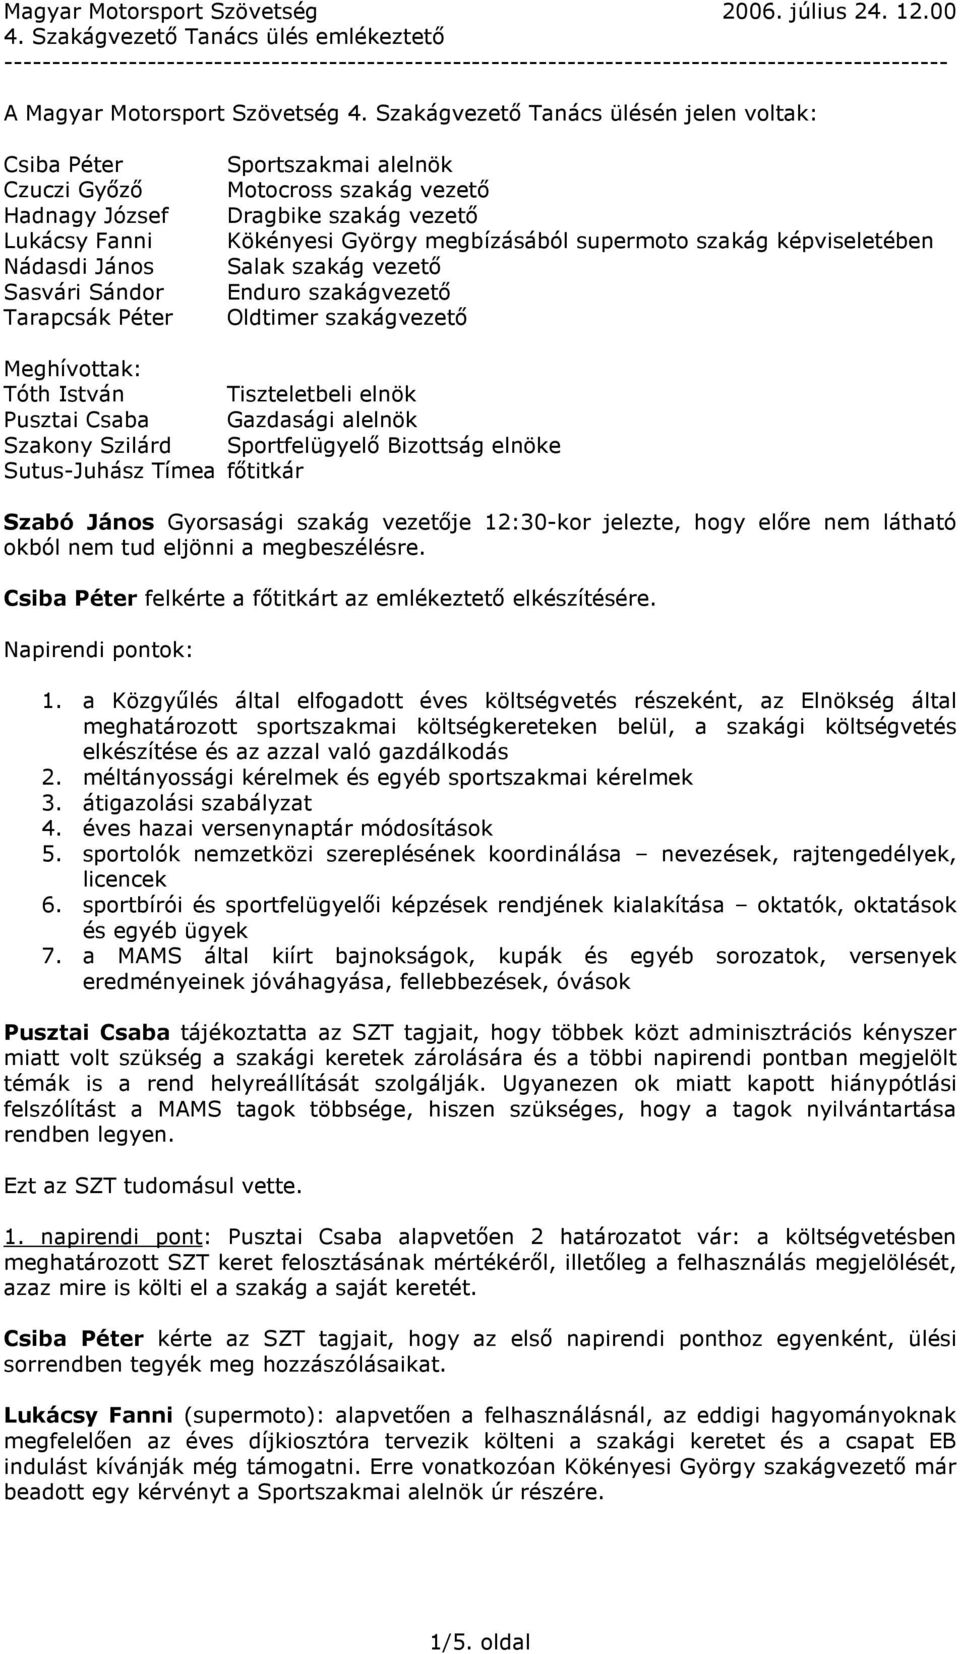 Fővárosi Horvát Önkormányzat - virtualismarketing.hu - Önkormányzati rendelettár